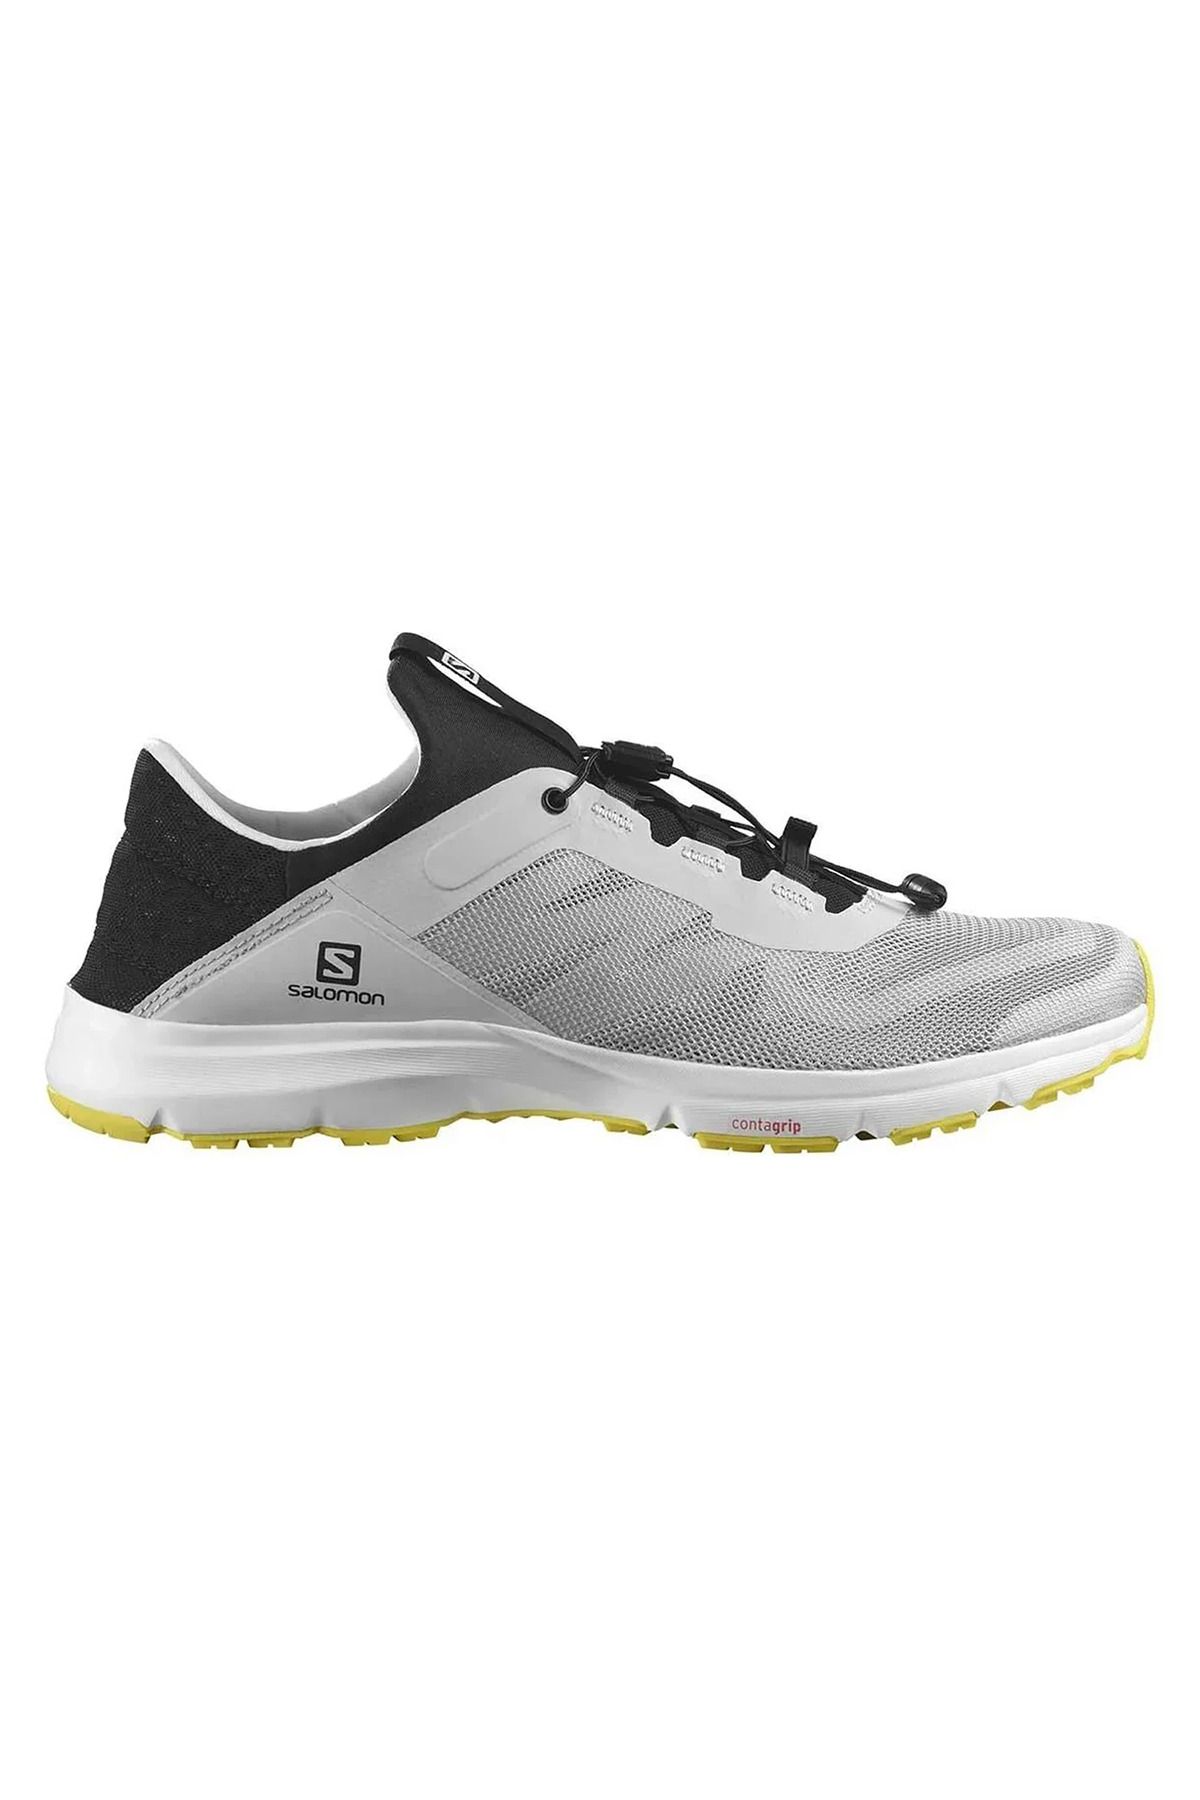 Salomon Amphib Bold 2 Erkek Gri Outdoor Koşu Ayakkabısı L47153600